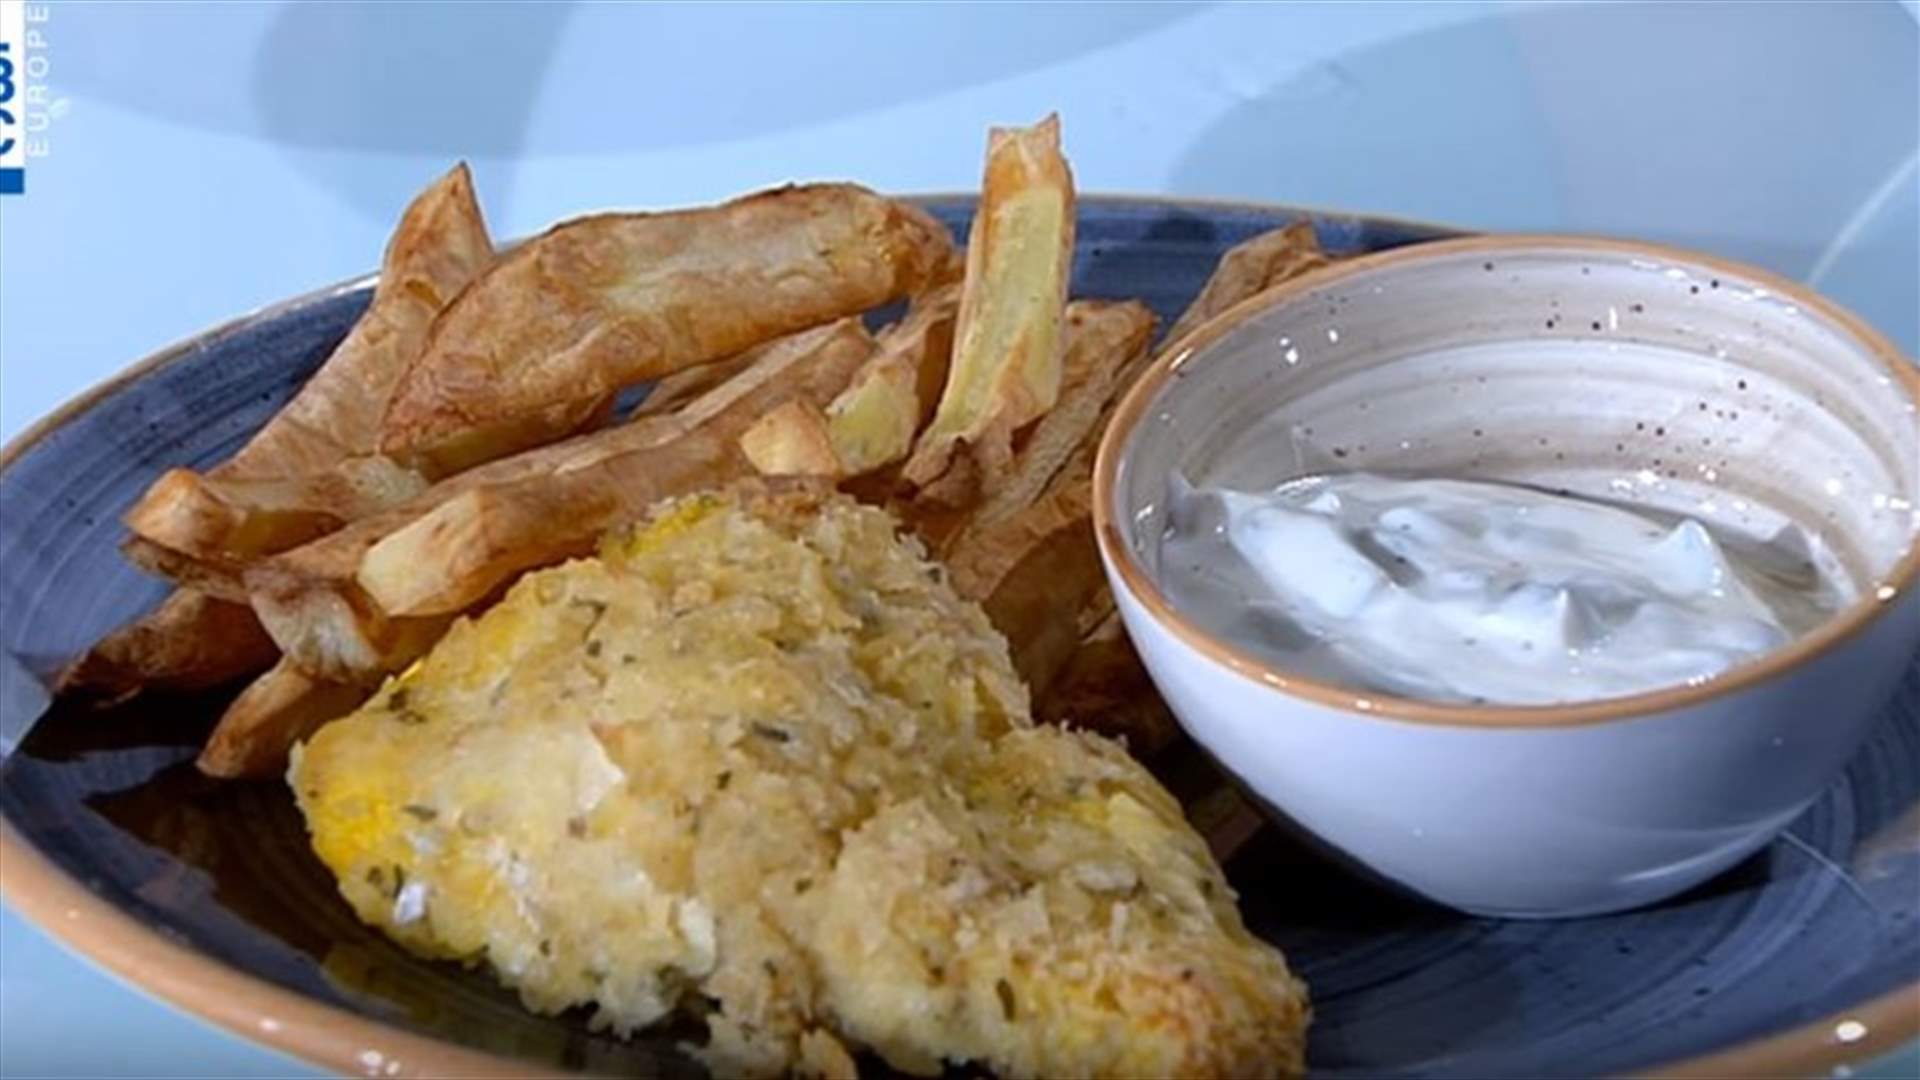 وصفة السمك والبطاطا المشوية على طريقة الشيف تينا وزيريان (فيديو)